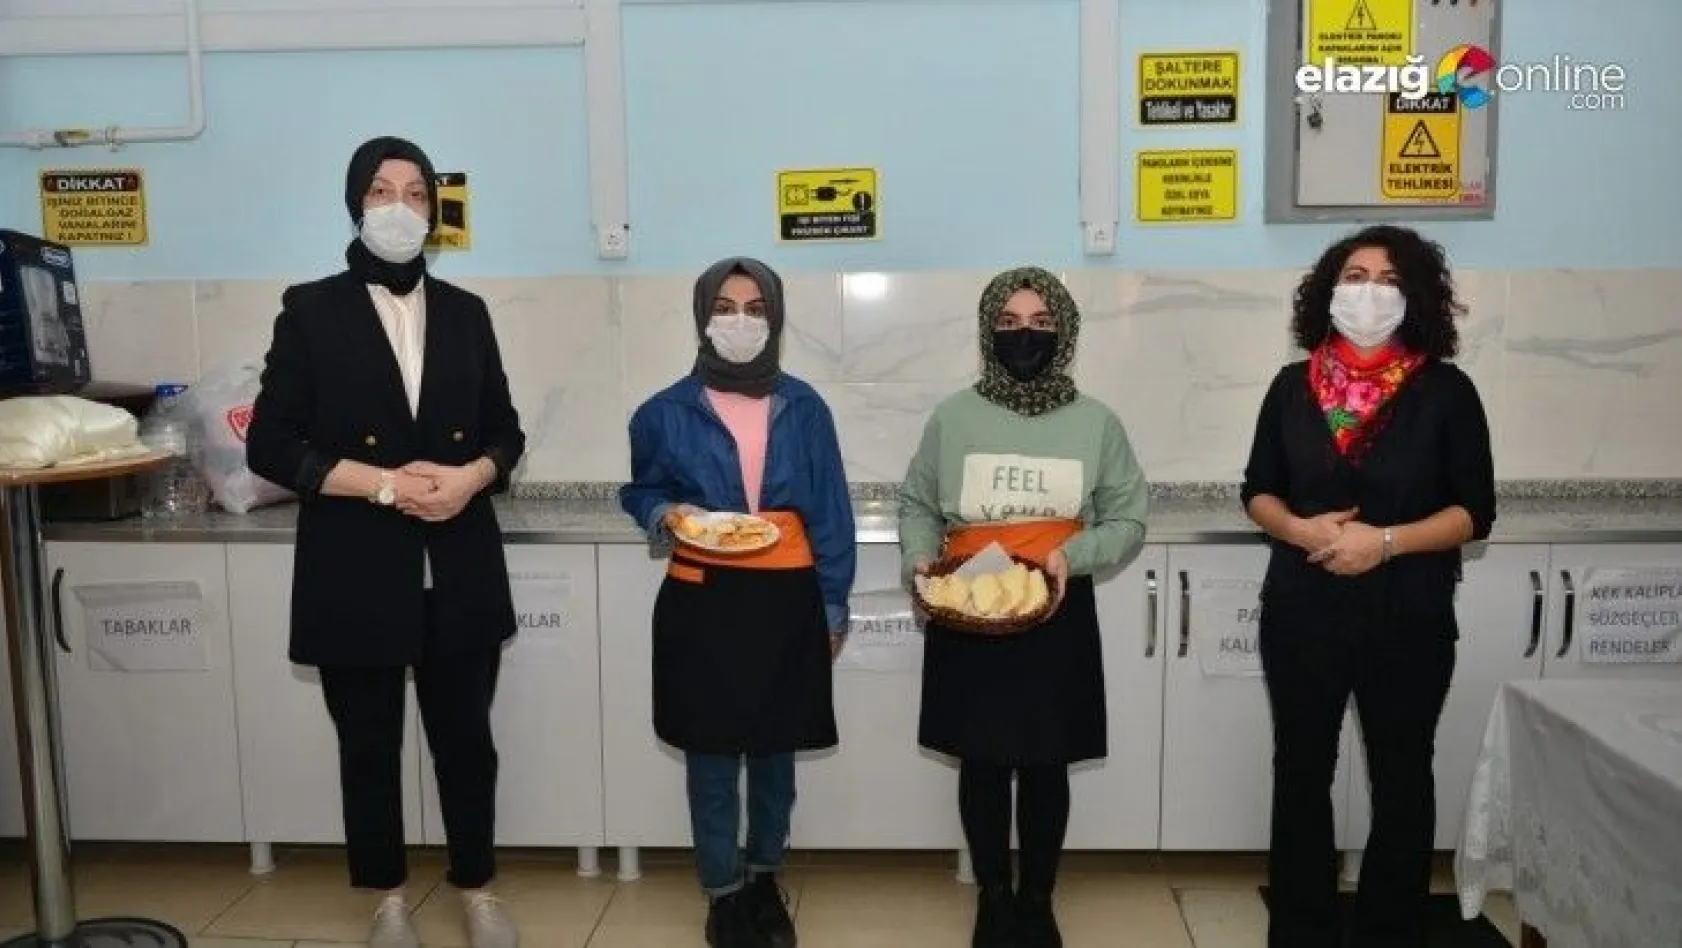 Elazığ'da çölyak hastası öğrenciler için 'glütensiz' ürünler üretilmeye başlandı